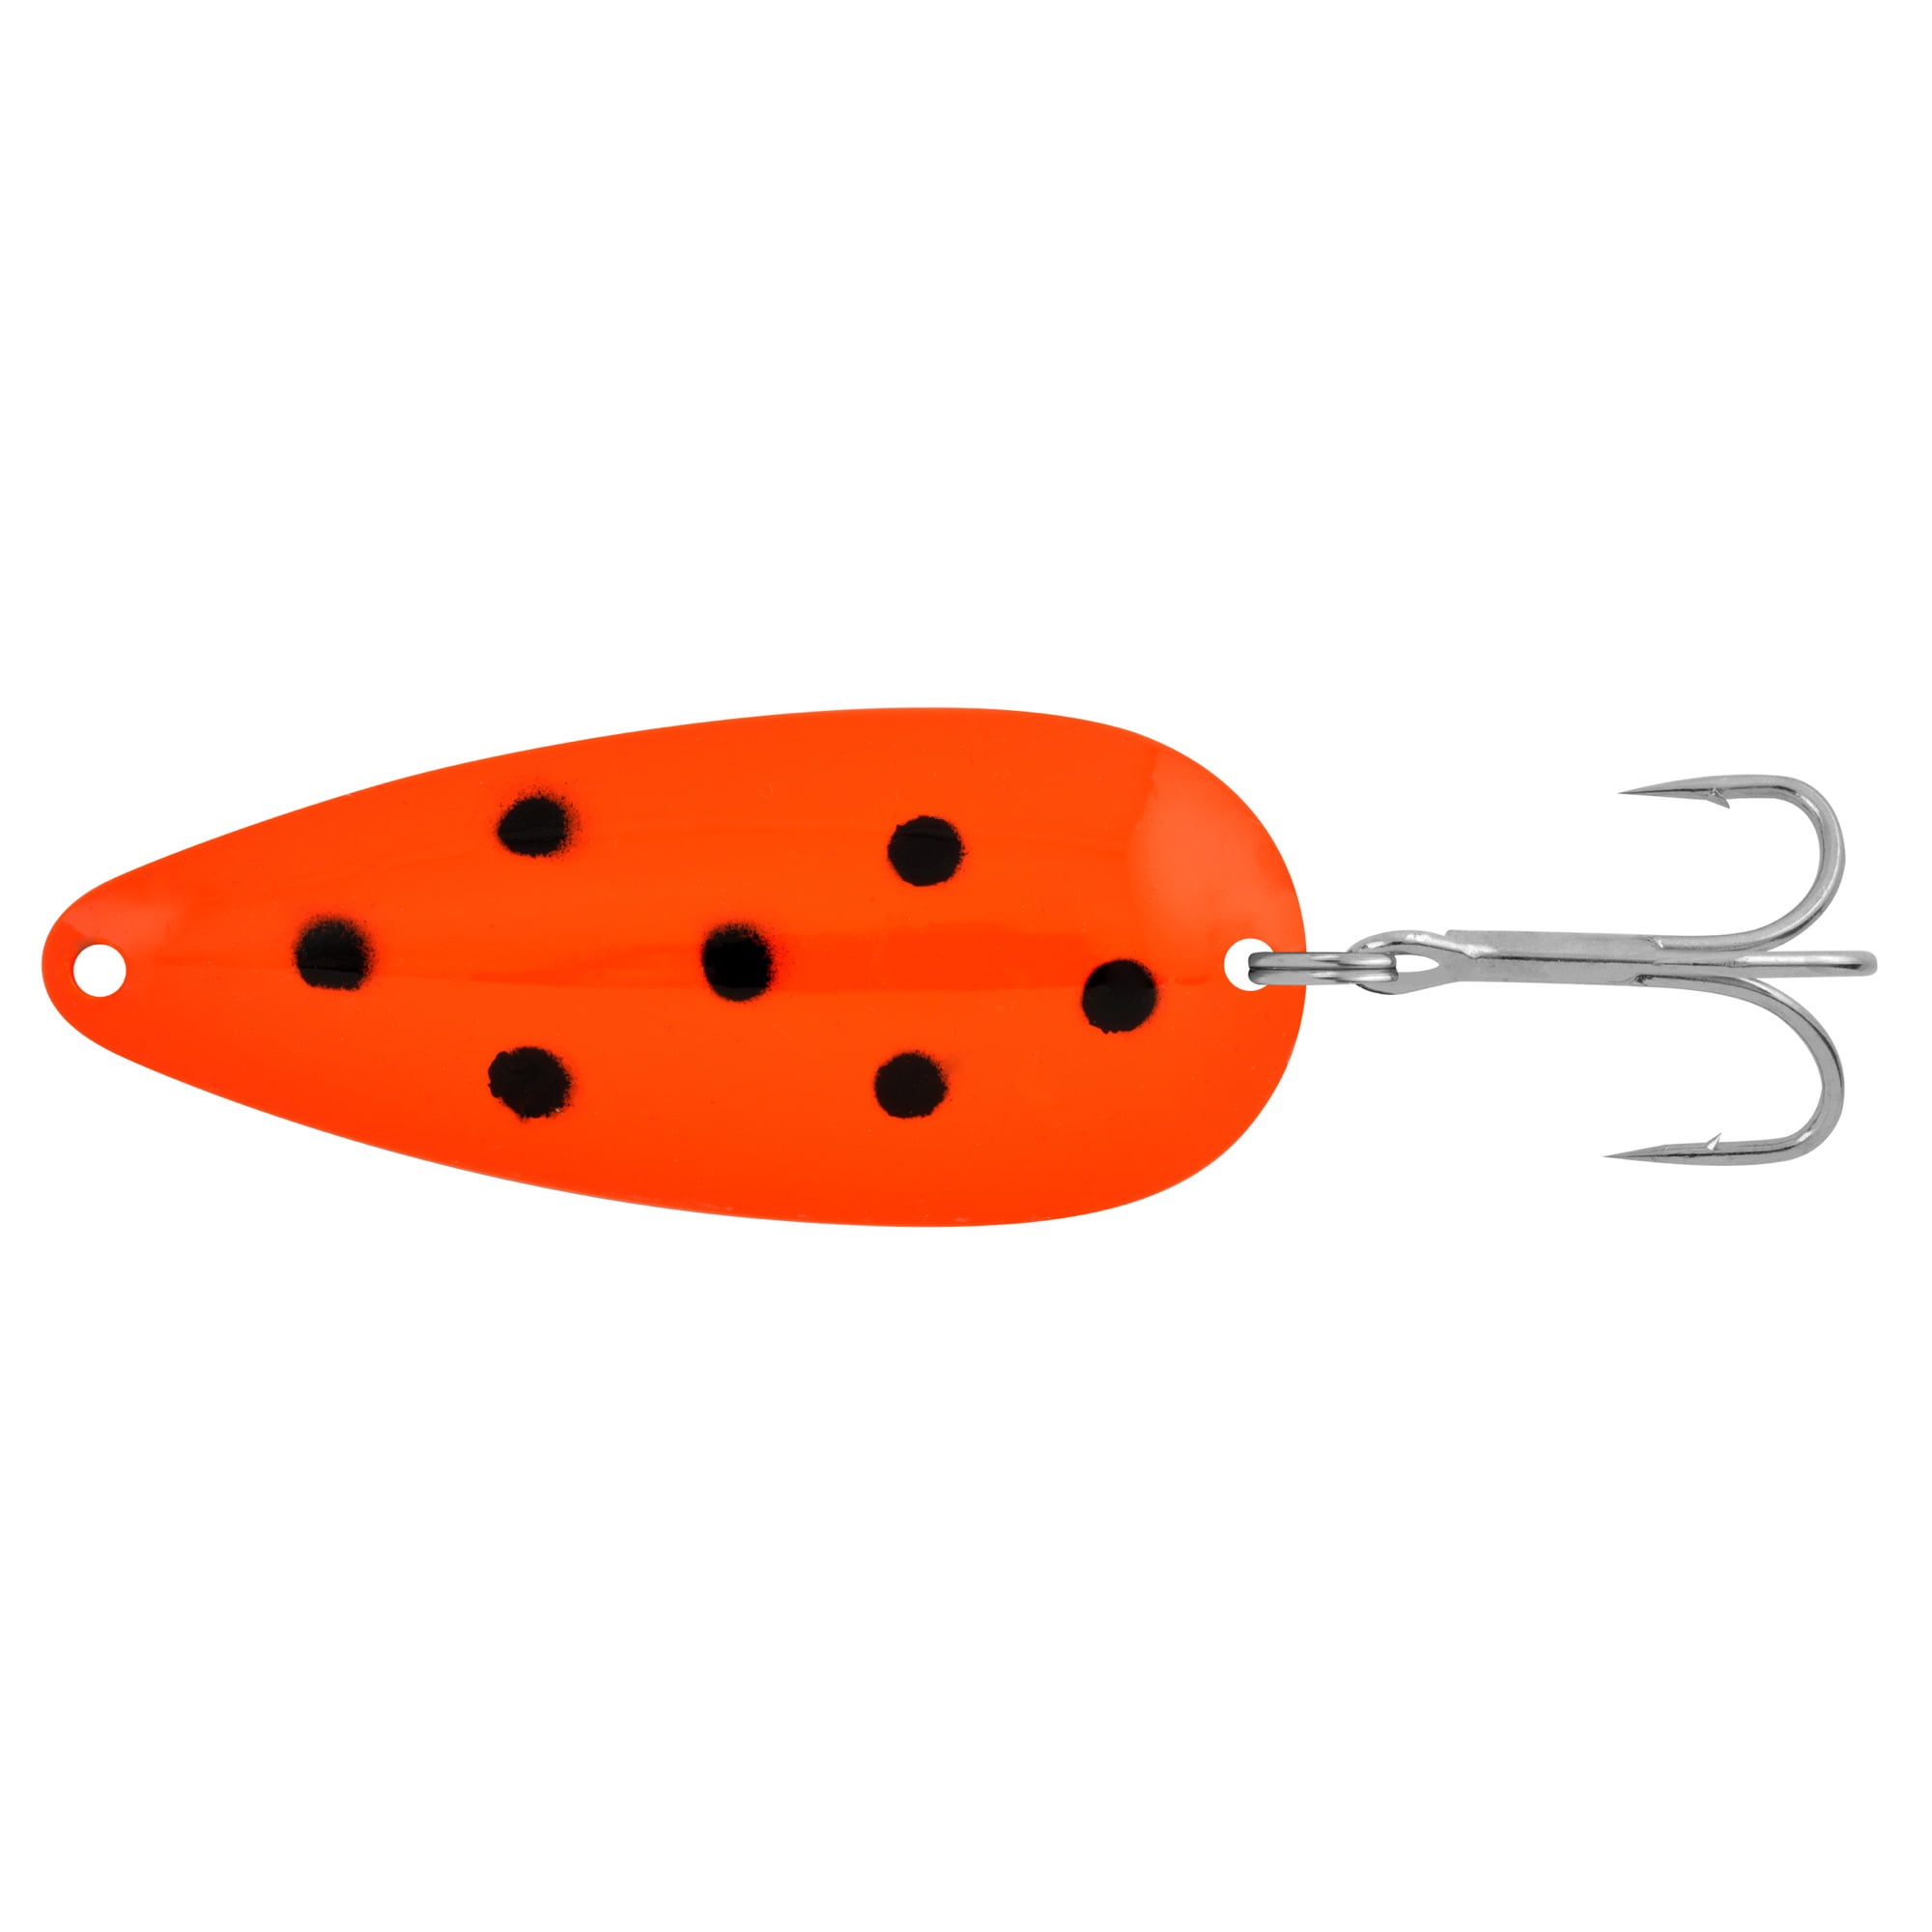 Apex Tackle Gamefish Spoon Firetiger 1/2 oz., Fishing Spoons 